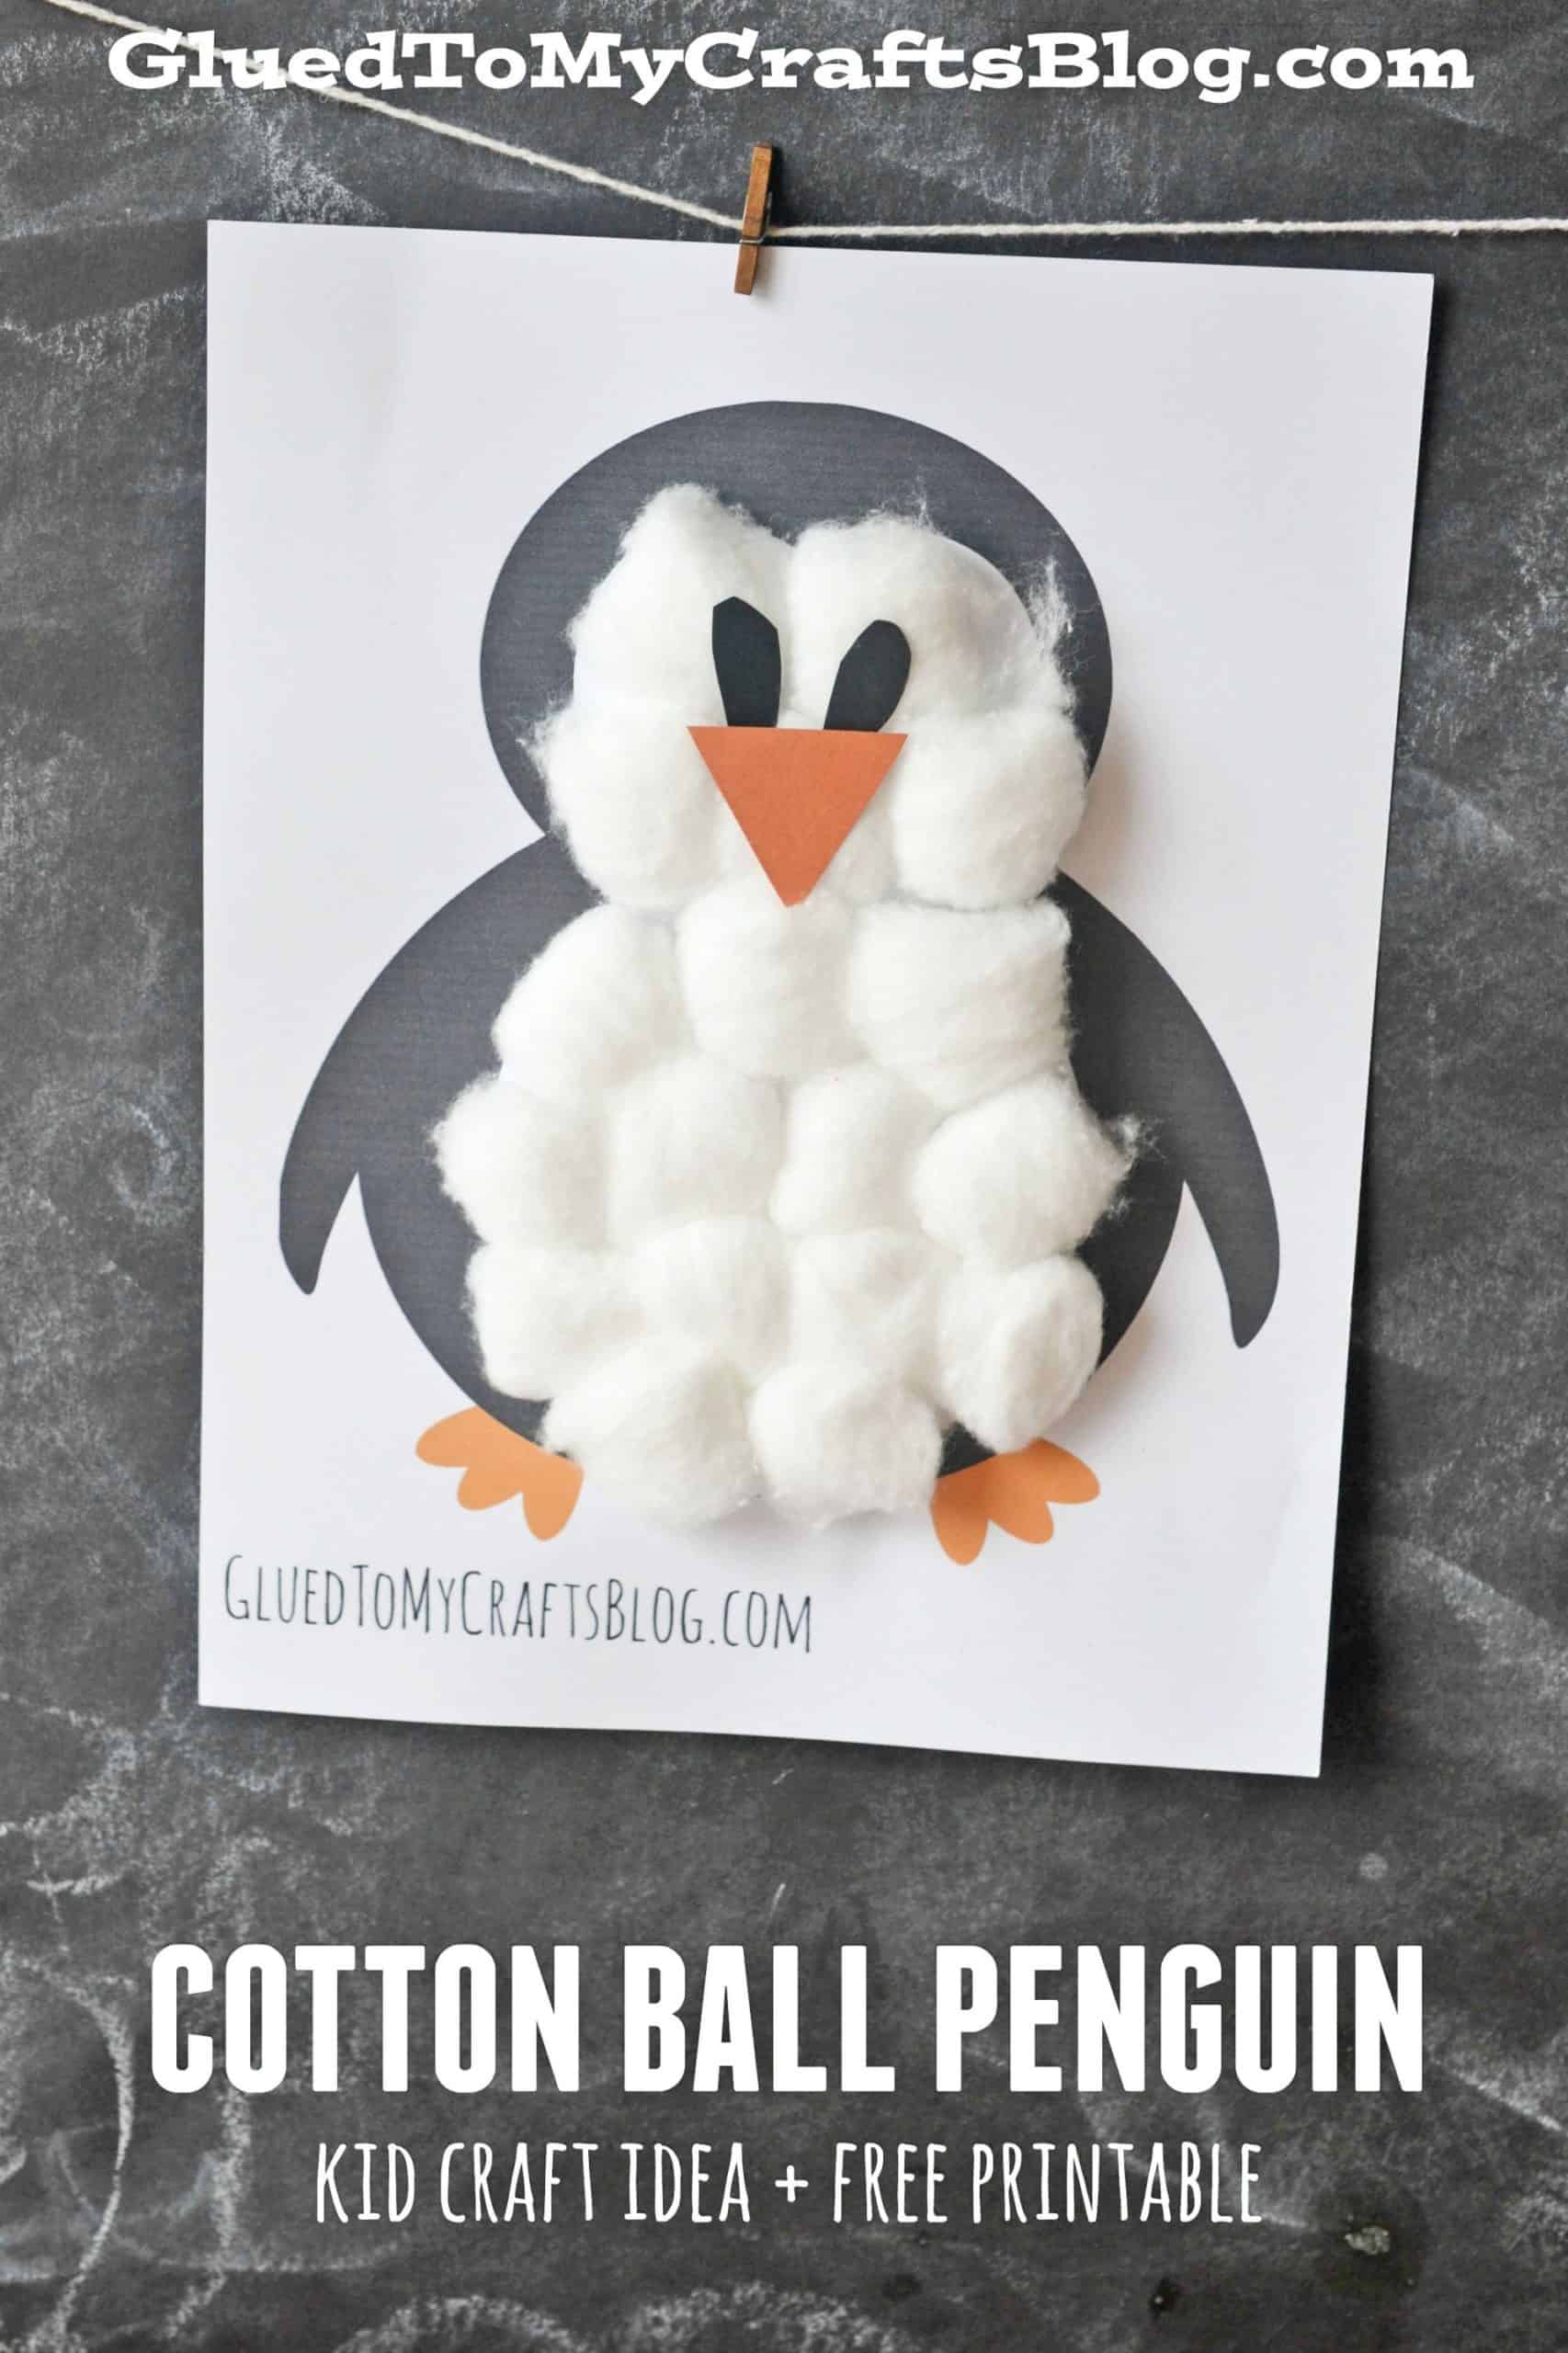 Cotton ball penguin